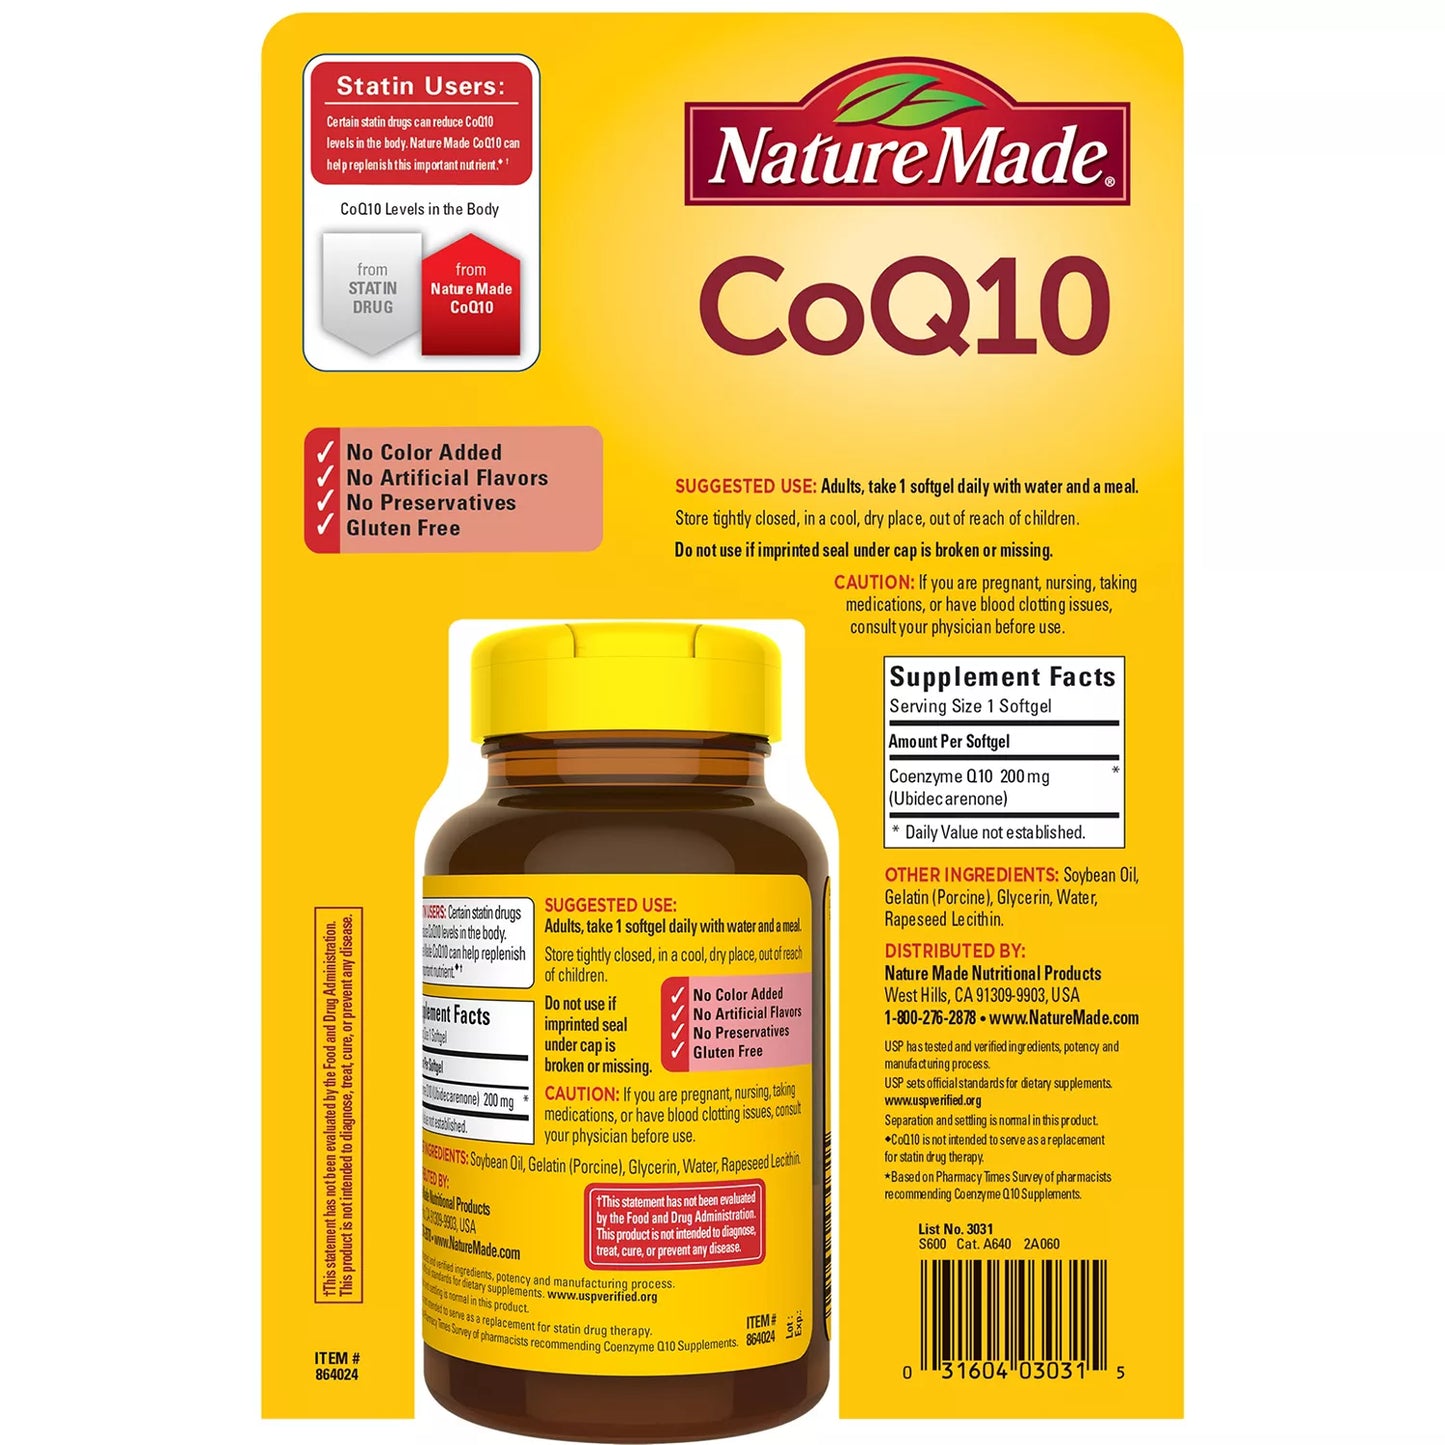 Nature Made CoQ10 200 mg. Softgels (140 ct.)